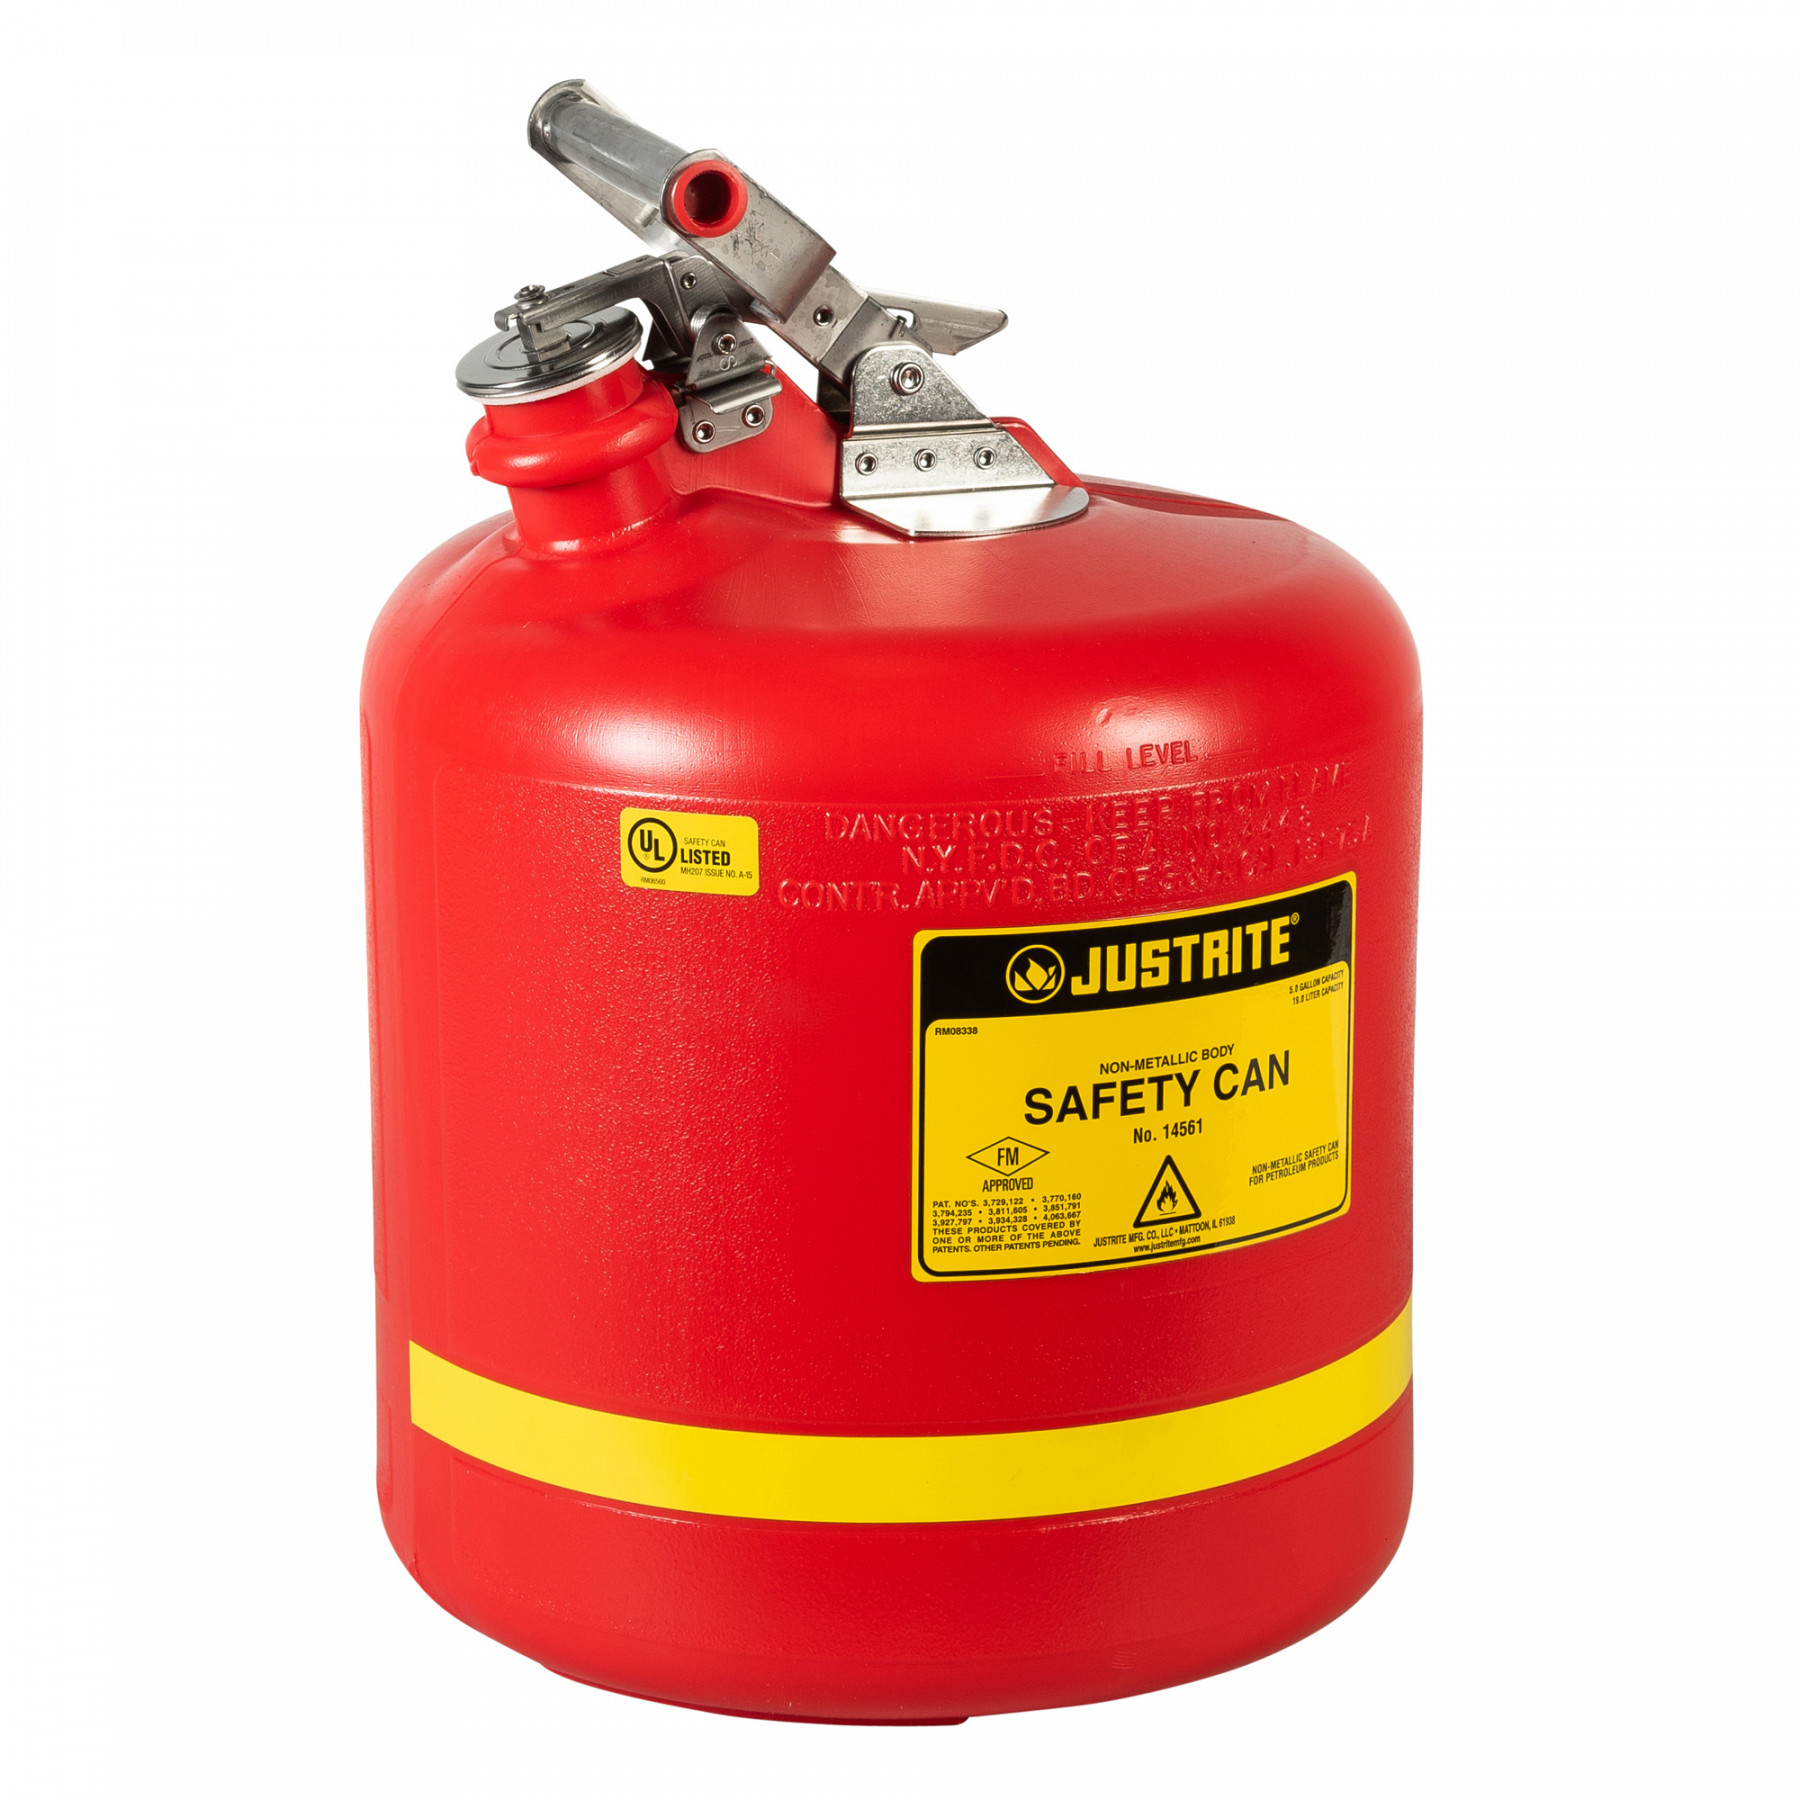 HDPE Sicherheitsbehälter Typ I  19 Liter in rot für brennbare Flüsssigkeiten